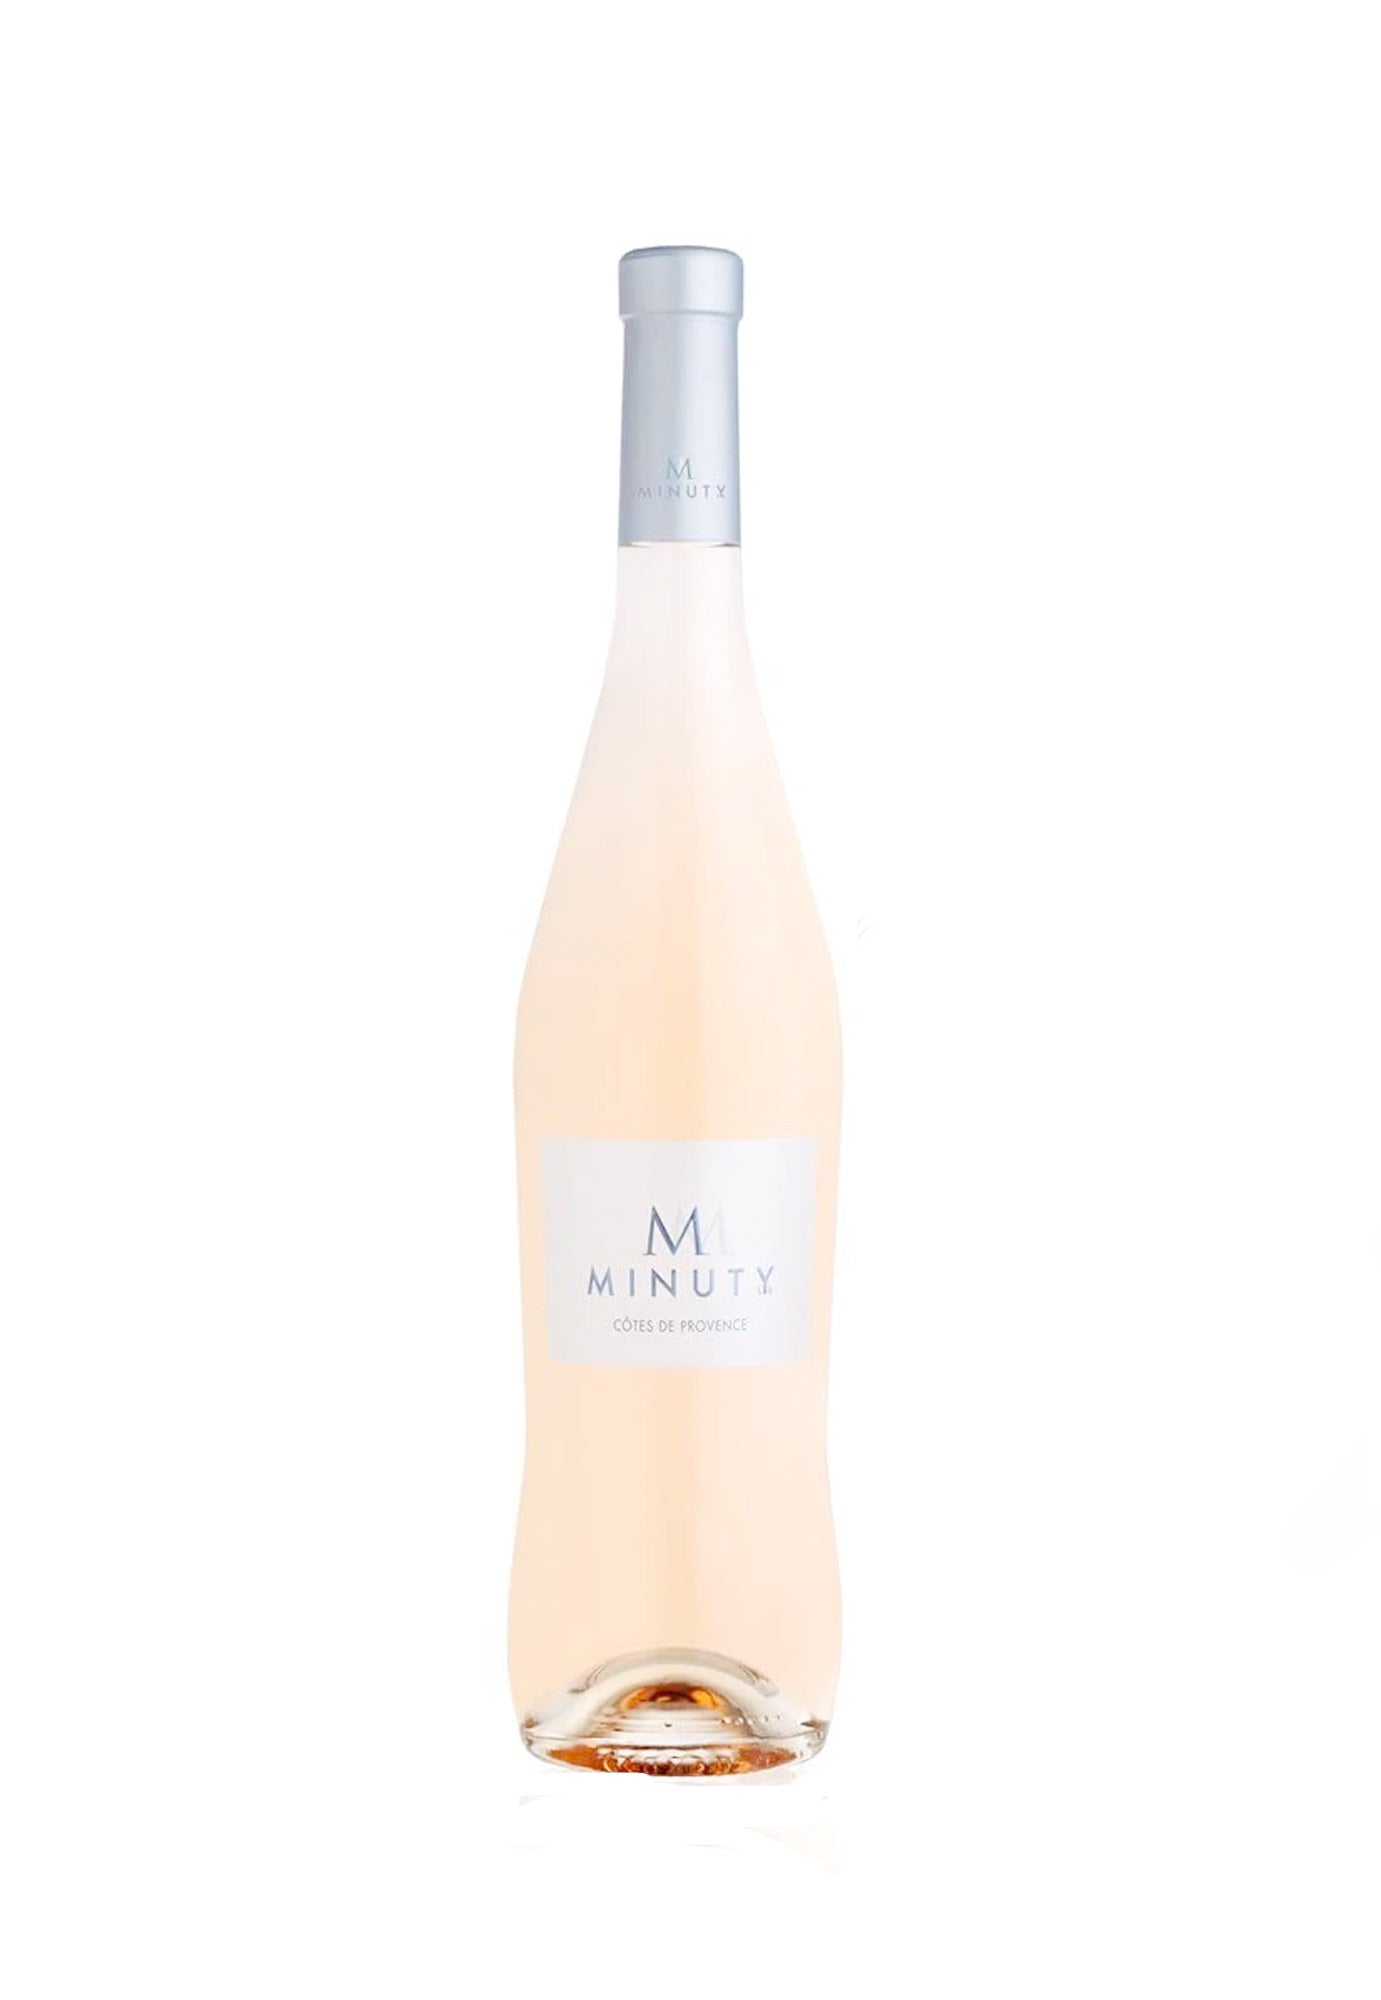 Chateau Minuty "M" Cotes de Provence Rose 2021 - 1.5 Litre Bottle